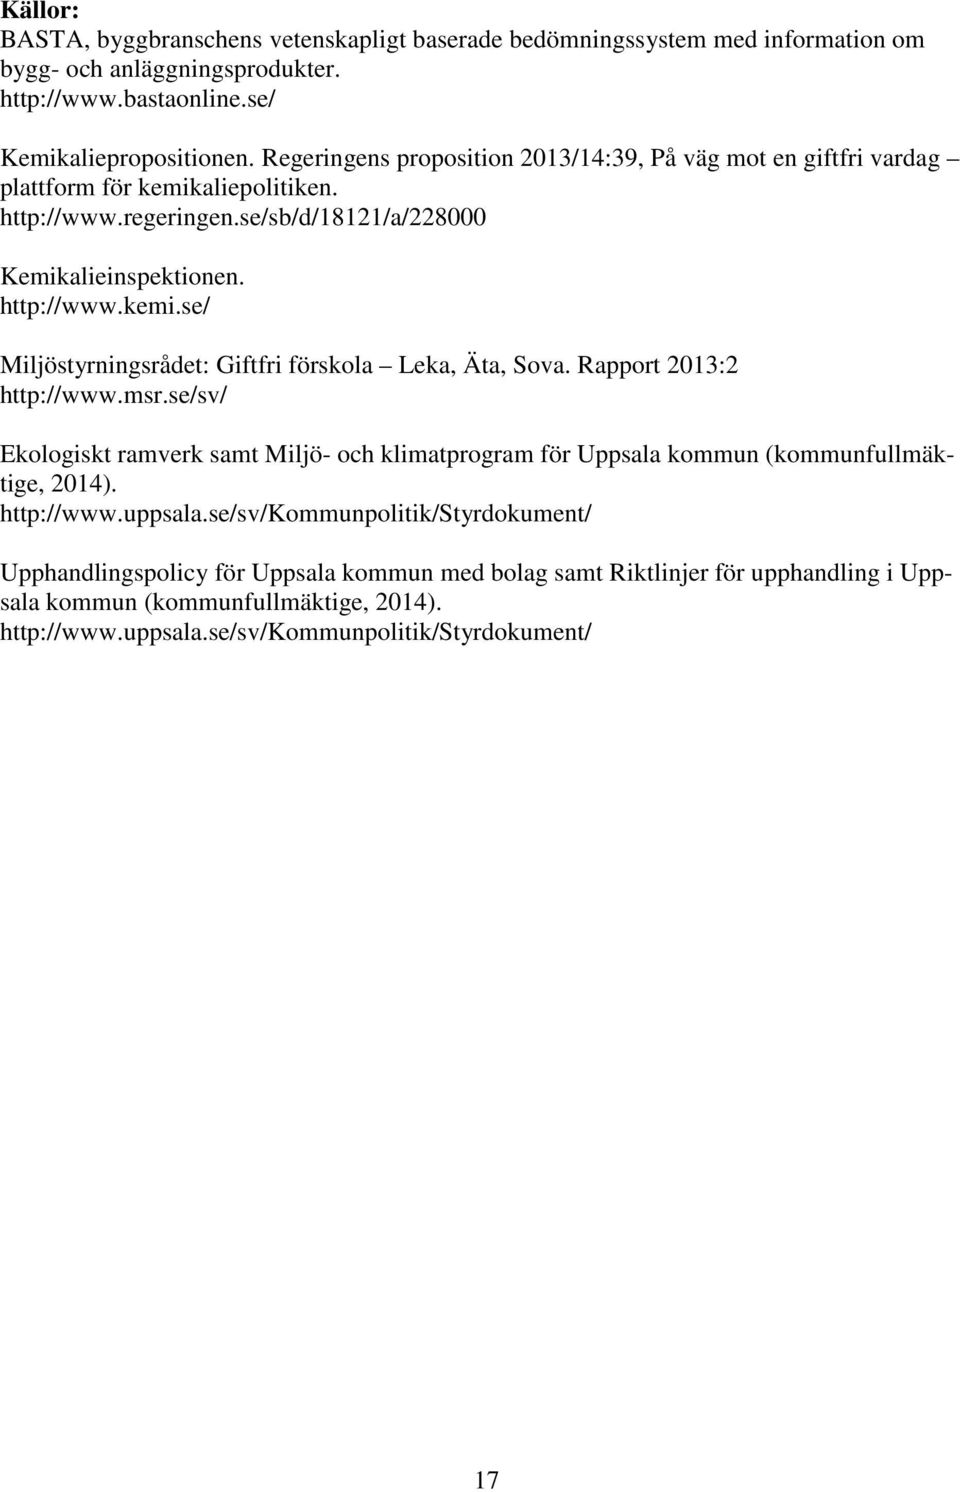 Rapport 2013:2 http://www.msr.se/sv/ Ekologiskt ramverk samt Miljö- och klimatprogram för Uppsala kommun (kommunfullmäktige, 2014). http://www.uppsala.